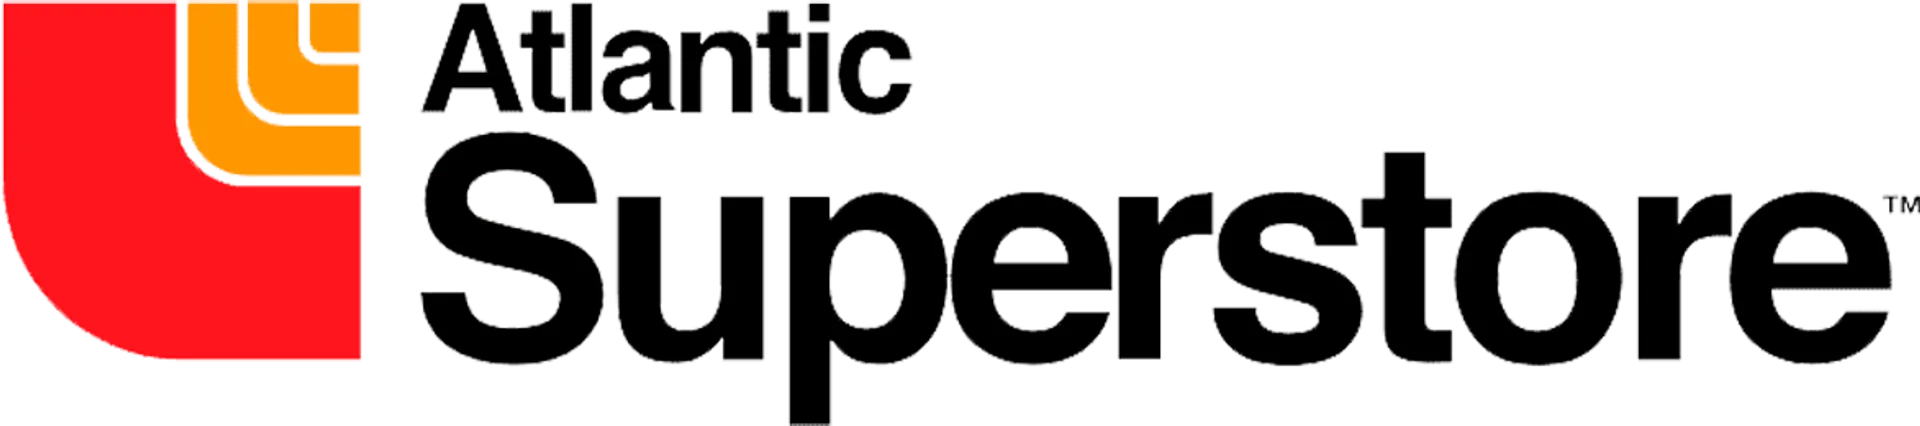 ATLANTIC SUPERSTORE logo